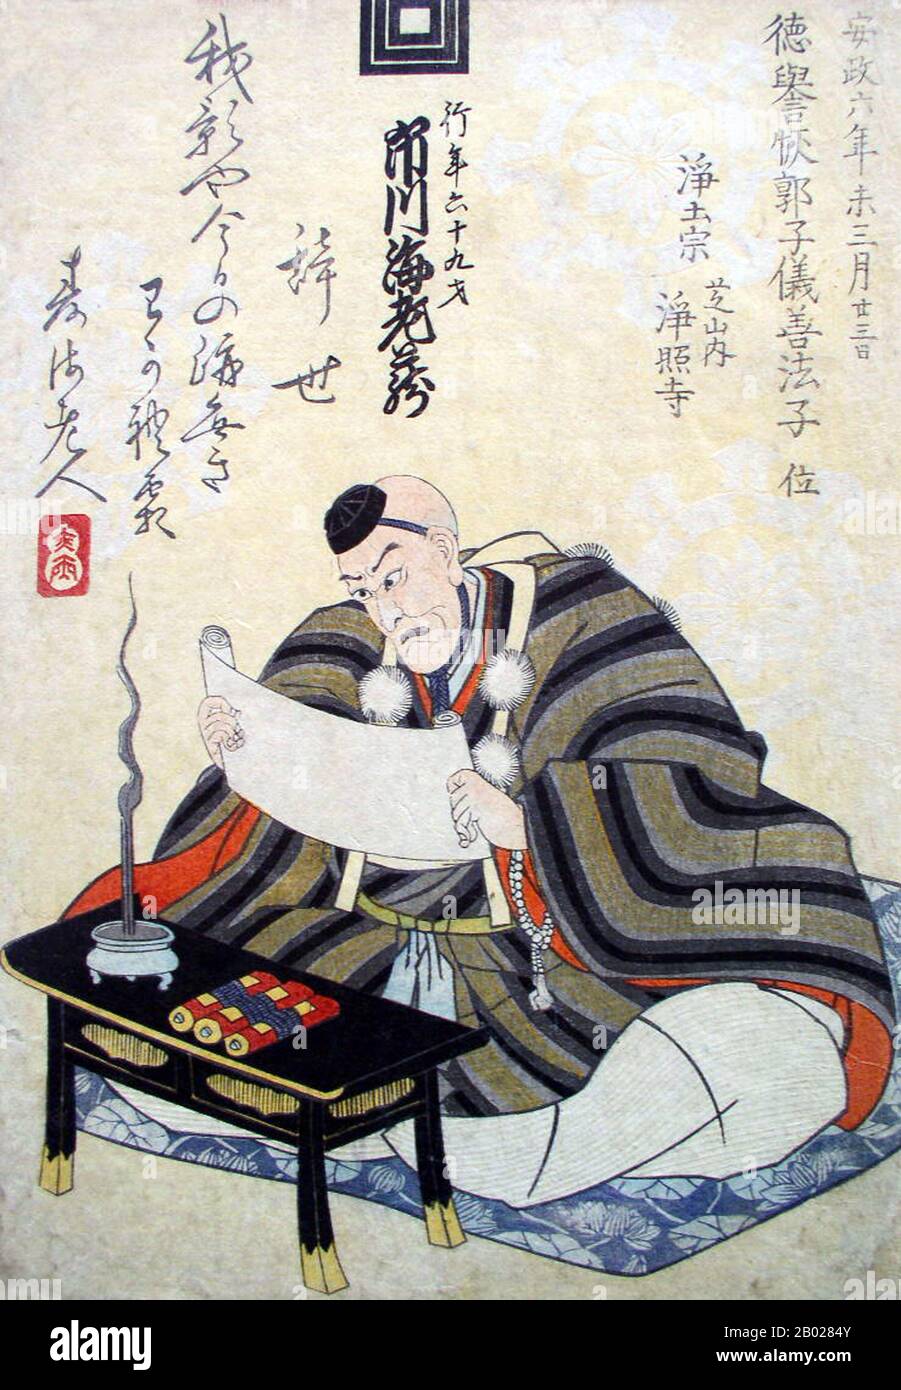 Drucke, die an den Tod eines Schauspielers, Künstlers oder Musikers erinnern, wurden als Schini-e (Gedenkporträt) bezeichnet. Konventionelle Schini-e porträtierten memorialisierte Figuren in hellblauen Hofgewändern, die als Schini sōzoku (Todeskleider) oder zeremonielle Kleidung namens mizu kamishimo (oft mit rituellem Selbstmord verbunden, genannt Seppuku) bezeichnet werden. Viele Schini-e enthielten die Daten von Tod, Alter, posthum buddhistischer Name (Kaimyo) und Tempelbegräbnisstätte, während einige Todesgedichte (Jisei) von Verstorbenen oder Gedenkgedichten hatten, die von Familie, Freunden, Kollegen oder Fans geschrieben wurden. Ichikawa Ebizō V. (1730-1859) war ein gefeierter Tachiyaku Stockfoto